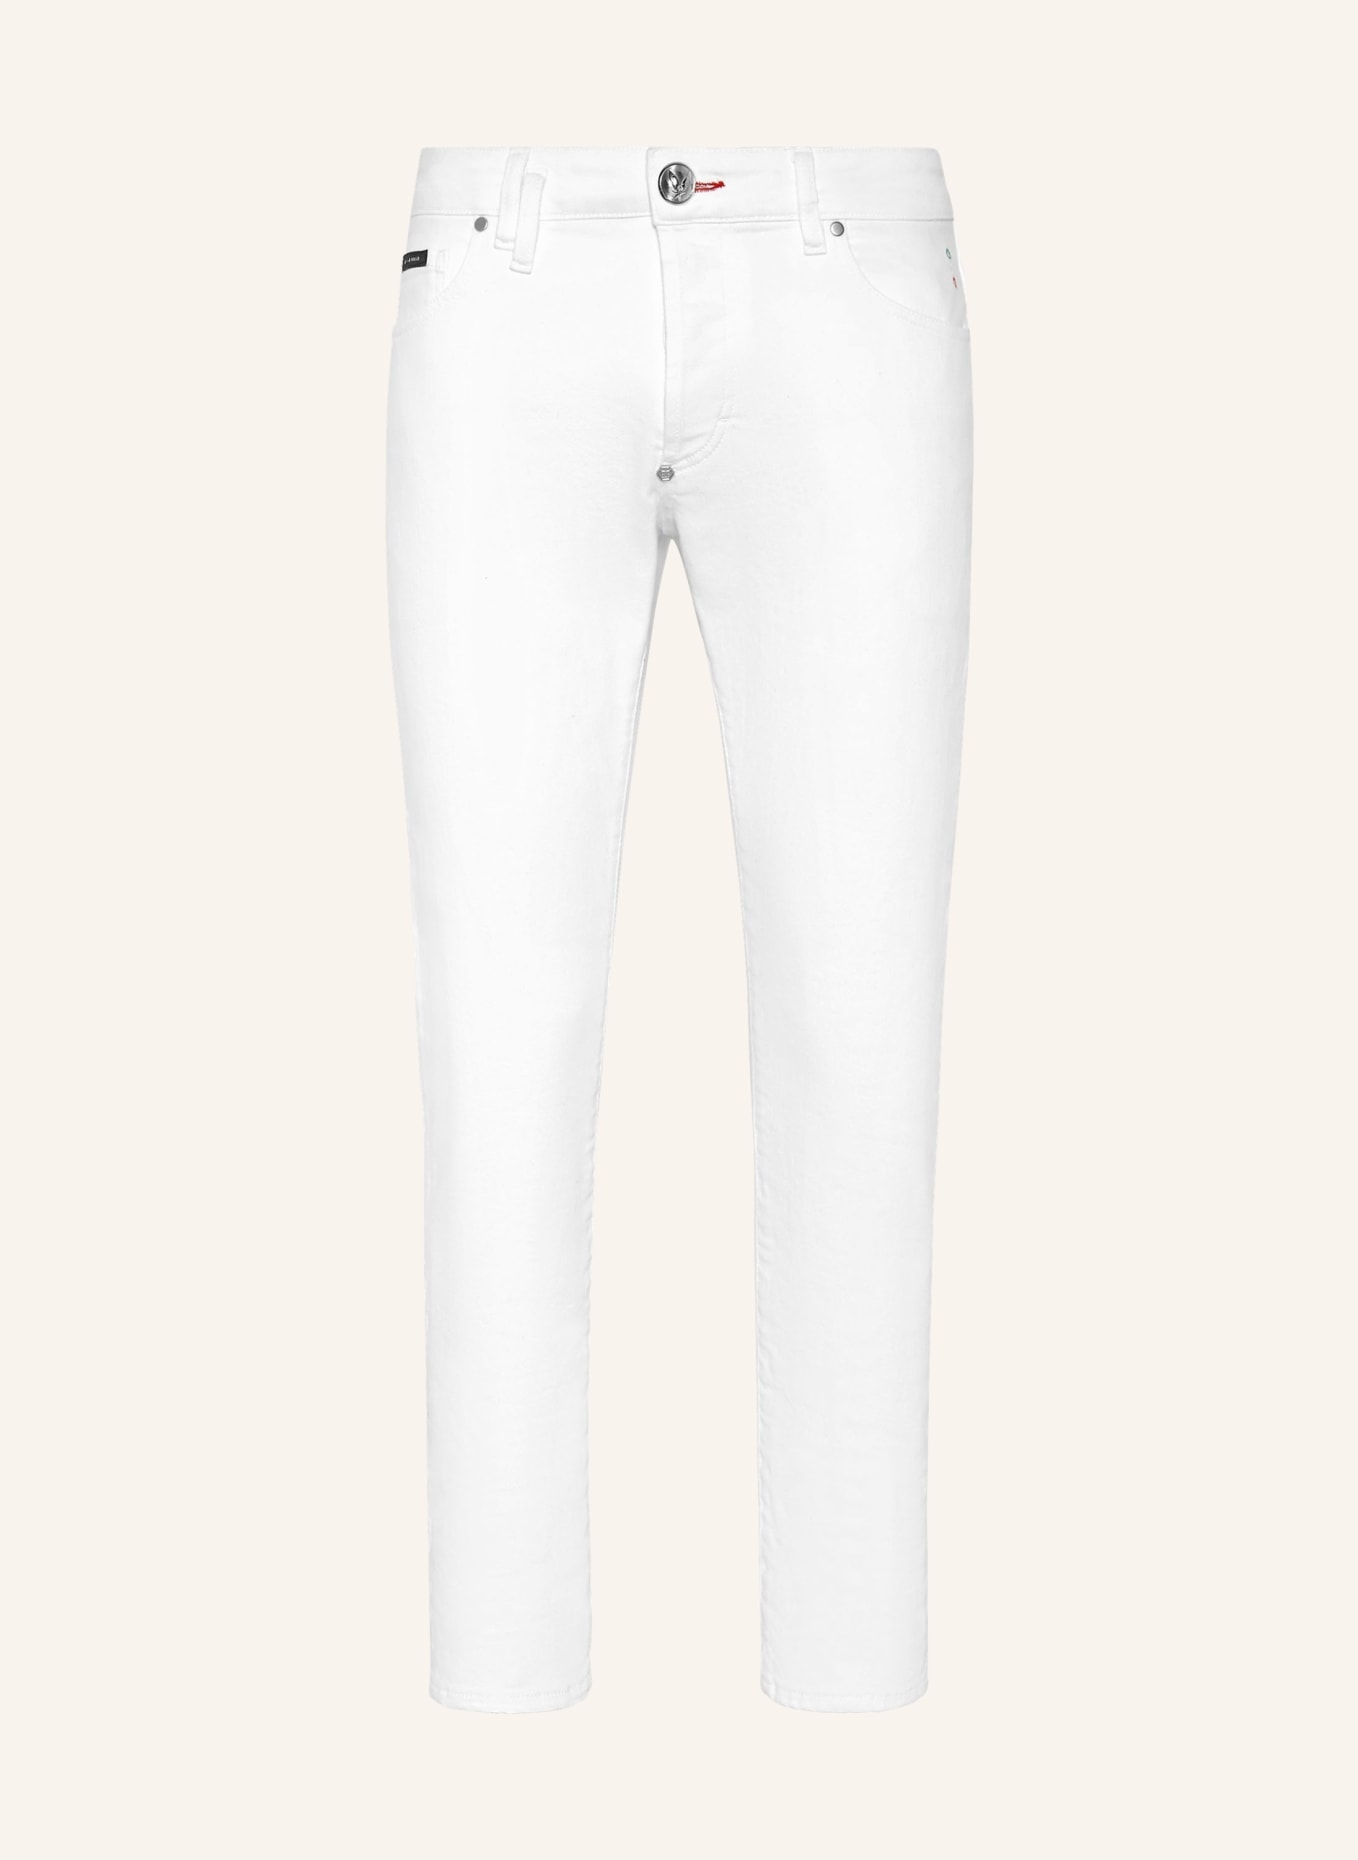 PHILIPP PLEIN Jeans Skinny Fit, Farbe: WEISS (Bild 1)